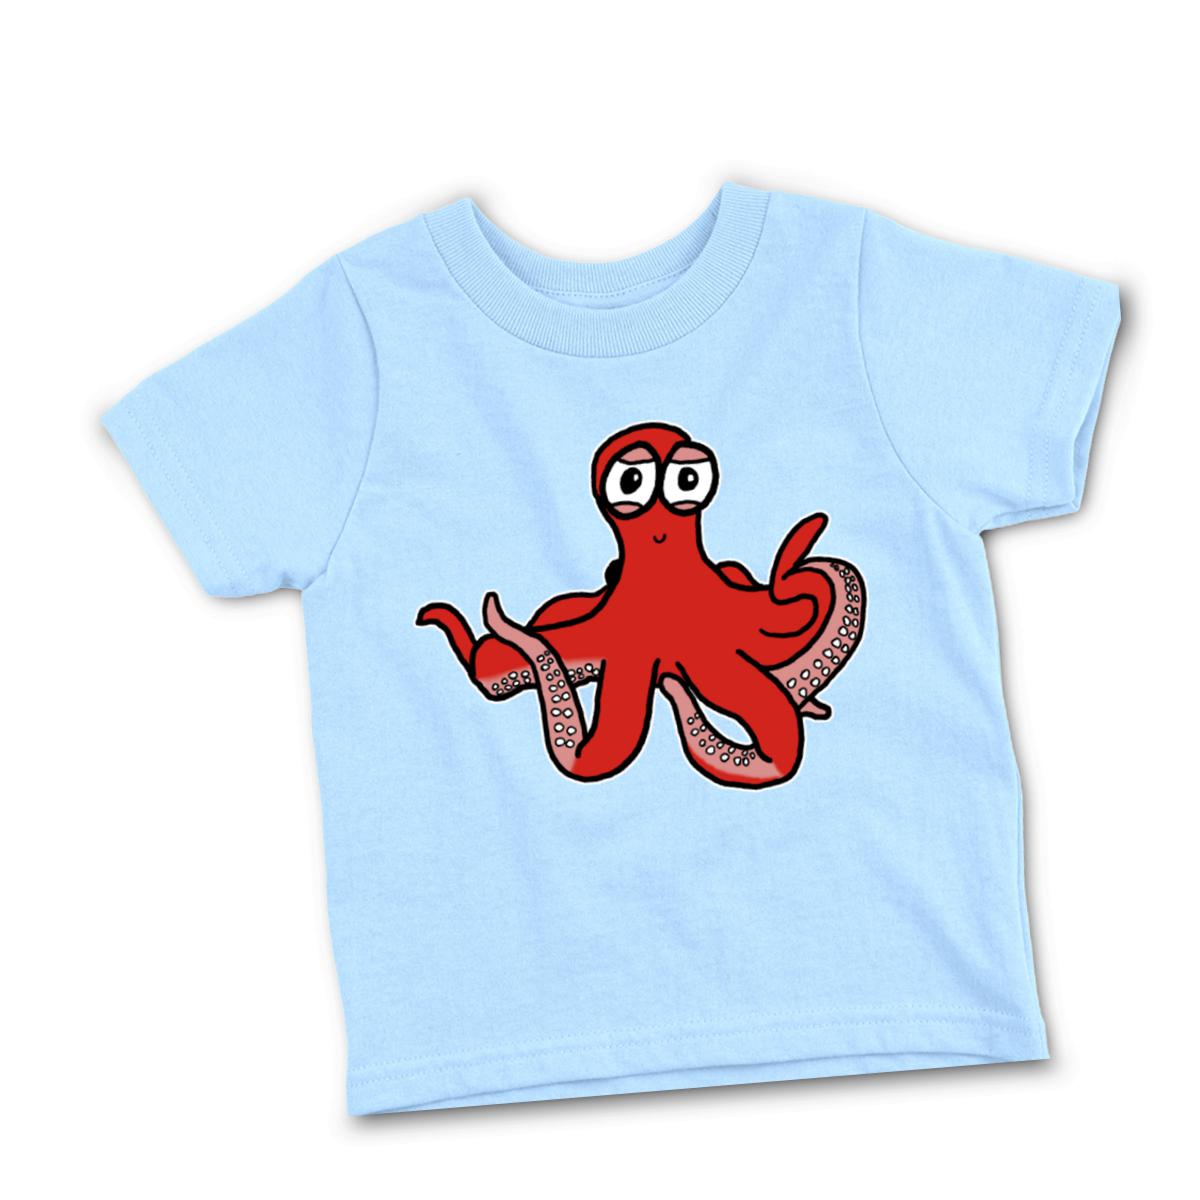 Octopus Toddler Tee 2T light-blue